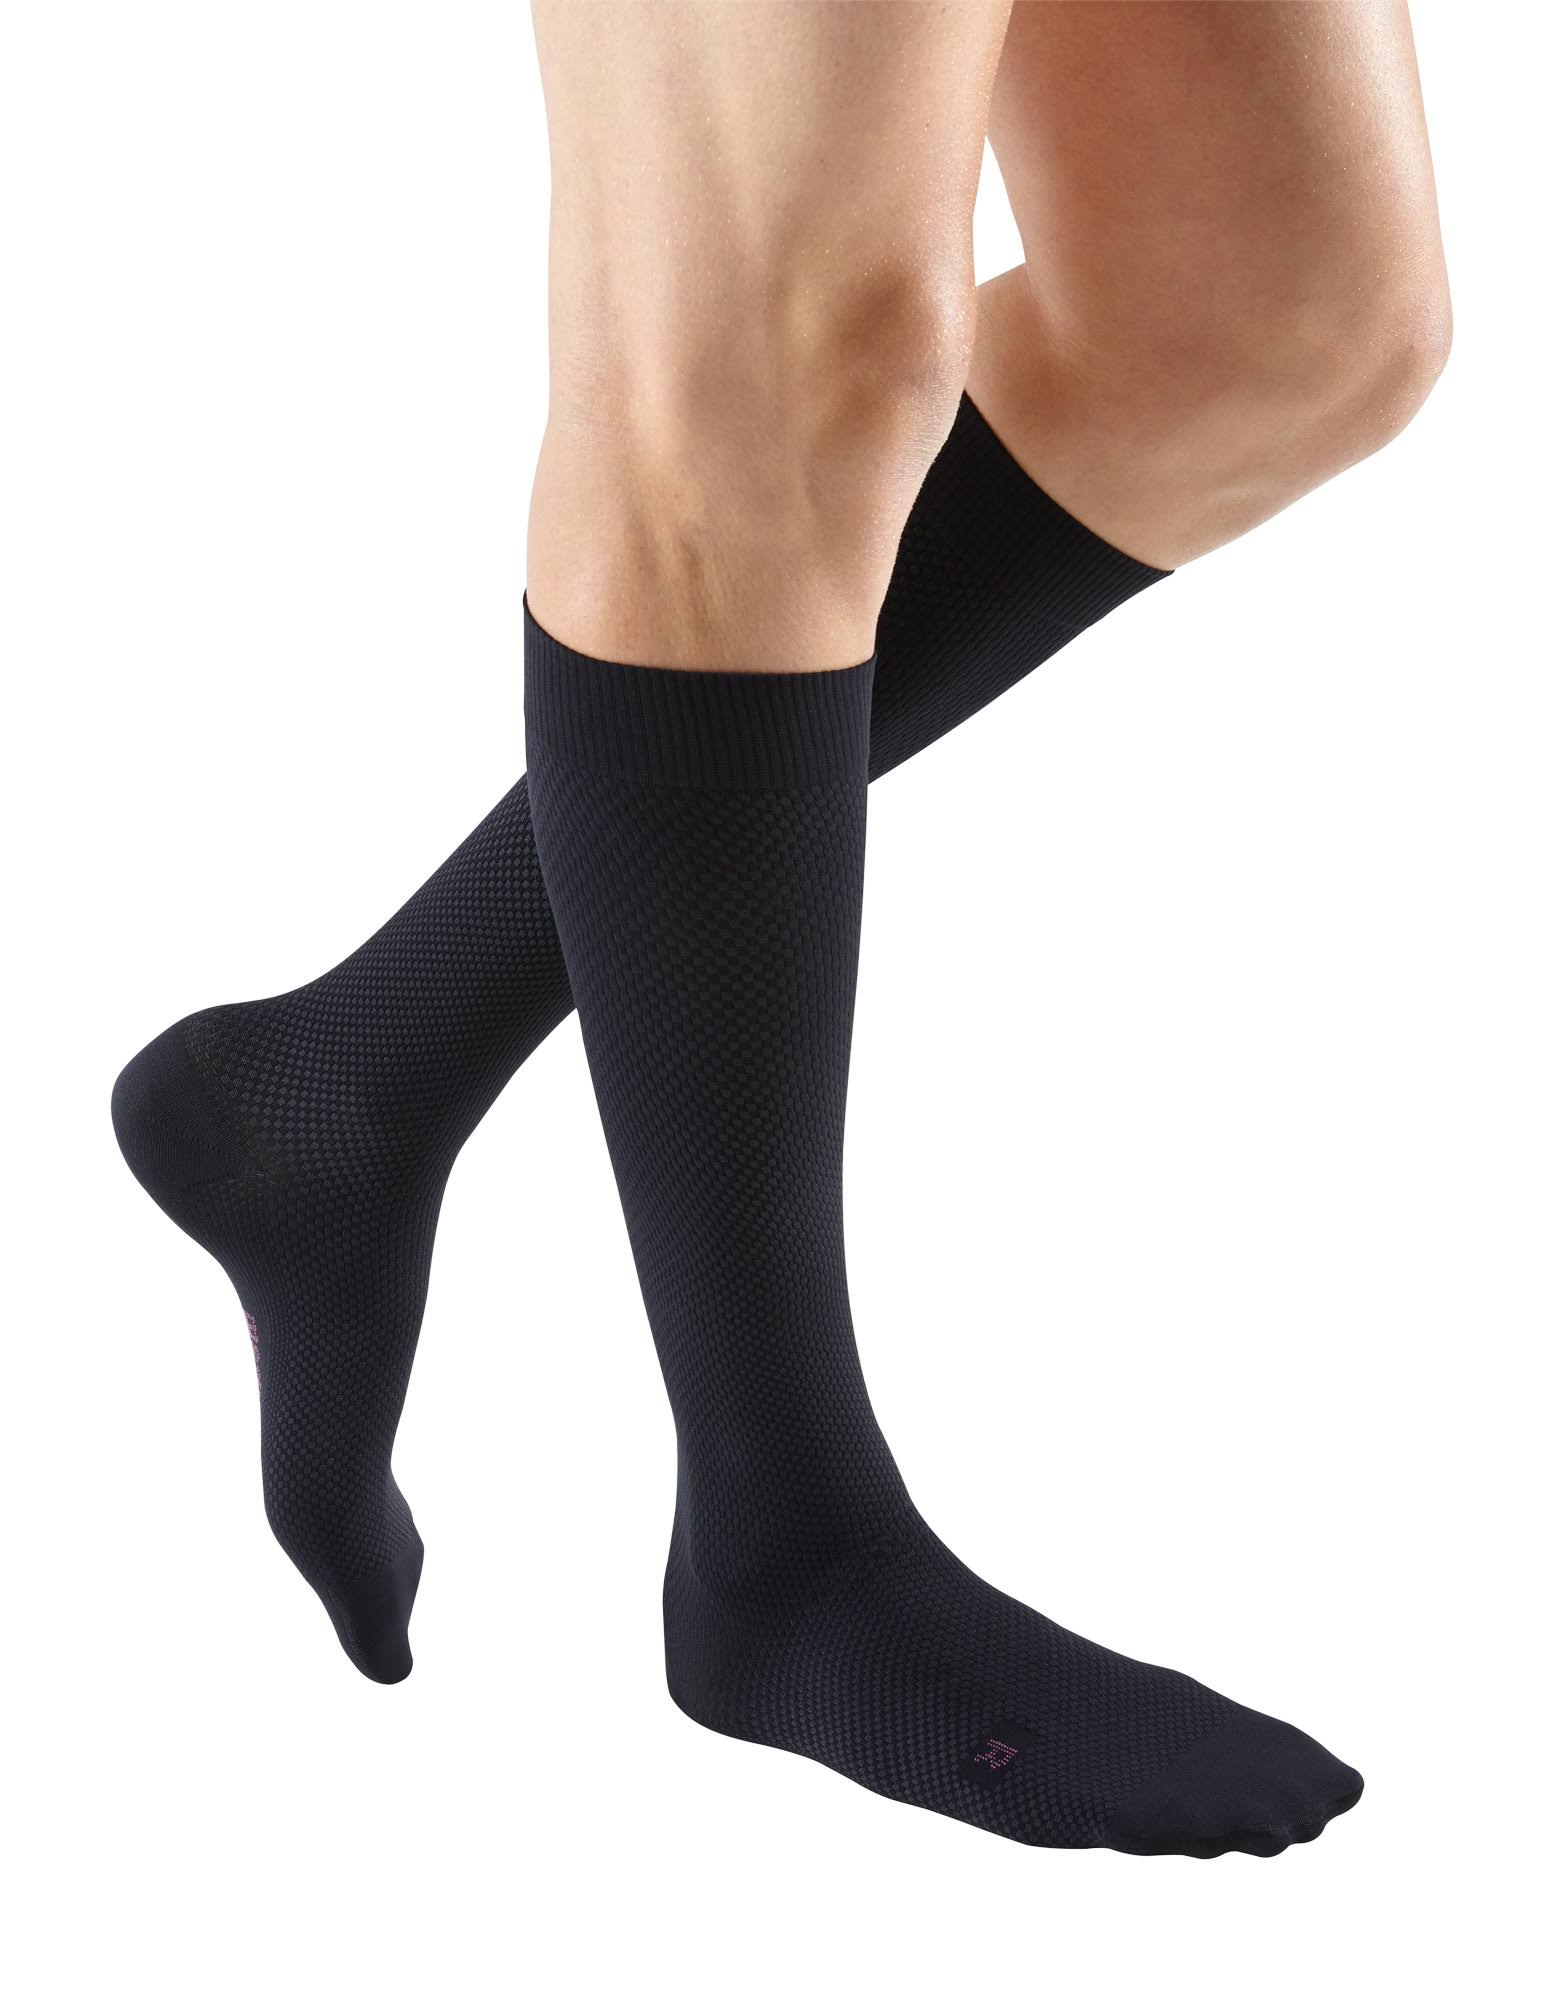 Mediven for Men Select 15-20 mmHg Knee High / IV / Standard / Black